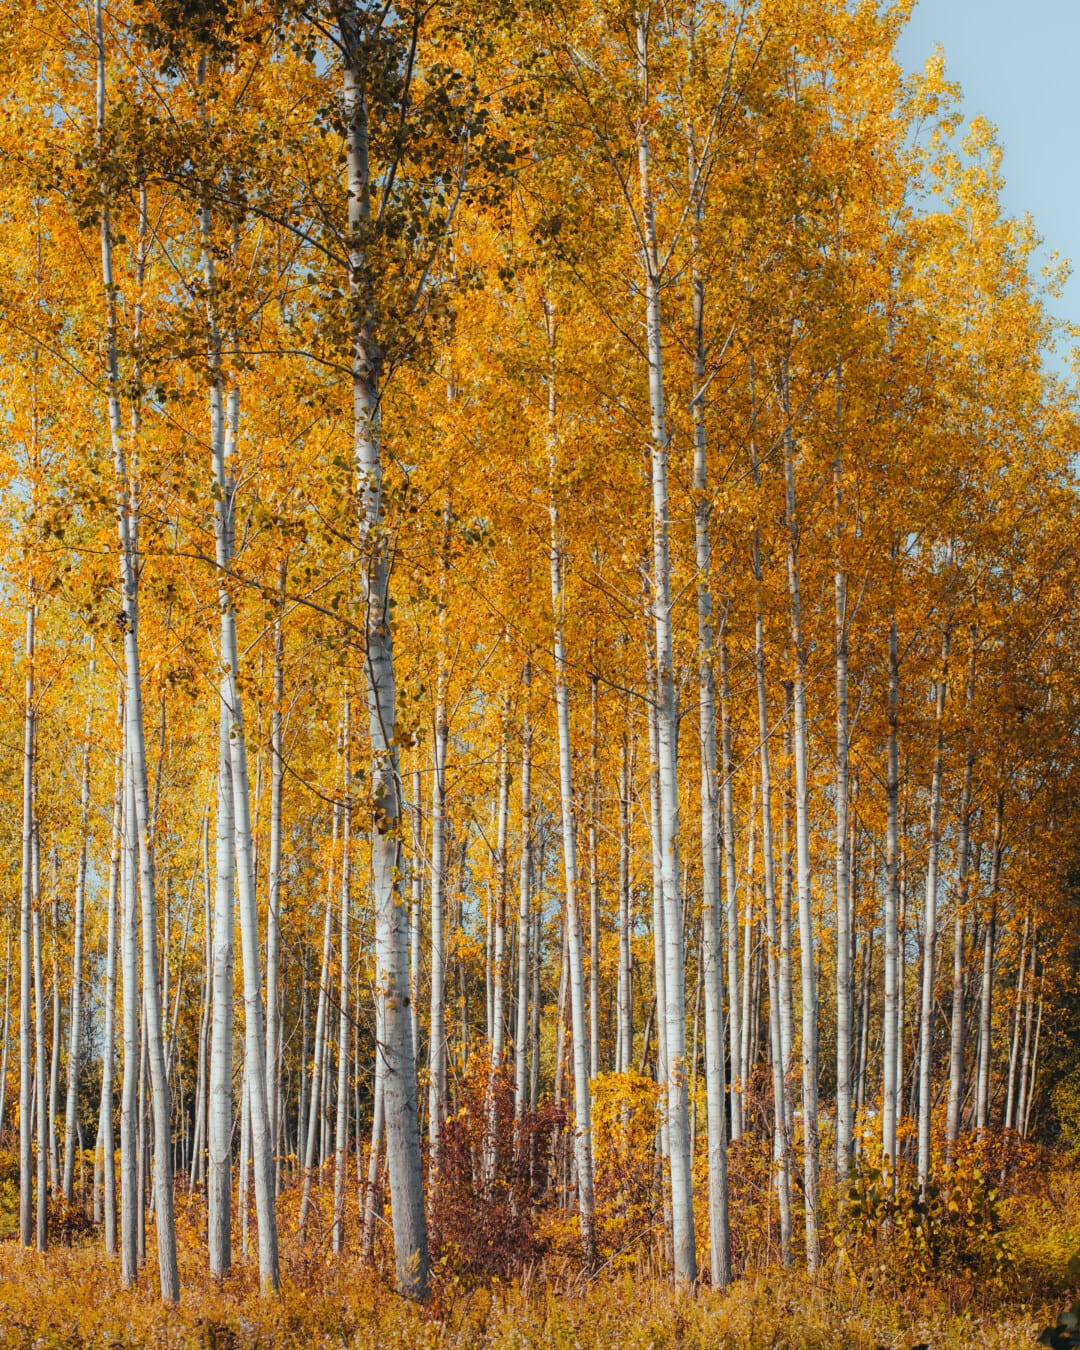 Plop, pădure, frunze galbene, galben maro, Sezonul de toamnă, octombrie, toamna, frunze, natura, lemn